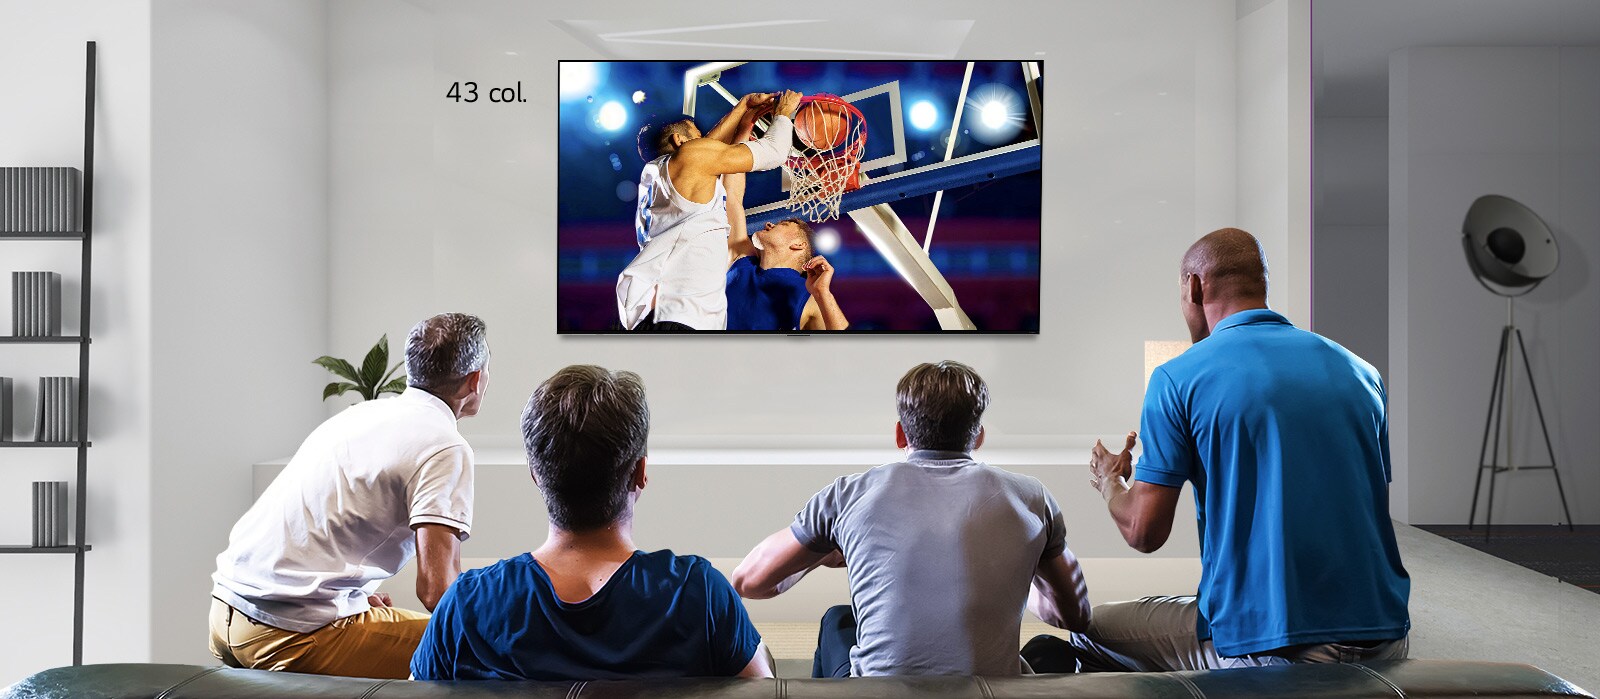 Keturių vyrų, žiūrinčių krepšinio rungtynes ant sienos įrengtame TV, vaizdas iš nugaros. Slenkant kairėn arba dešinėn parodomas 43 col. ir 86 col. ekranų skirtumas.